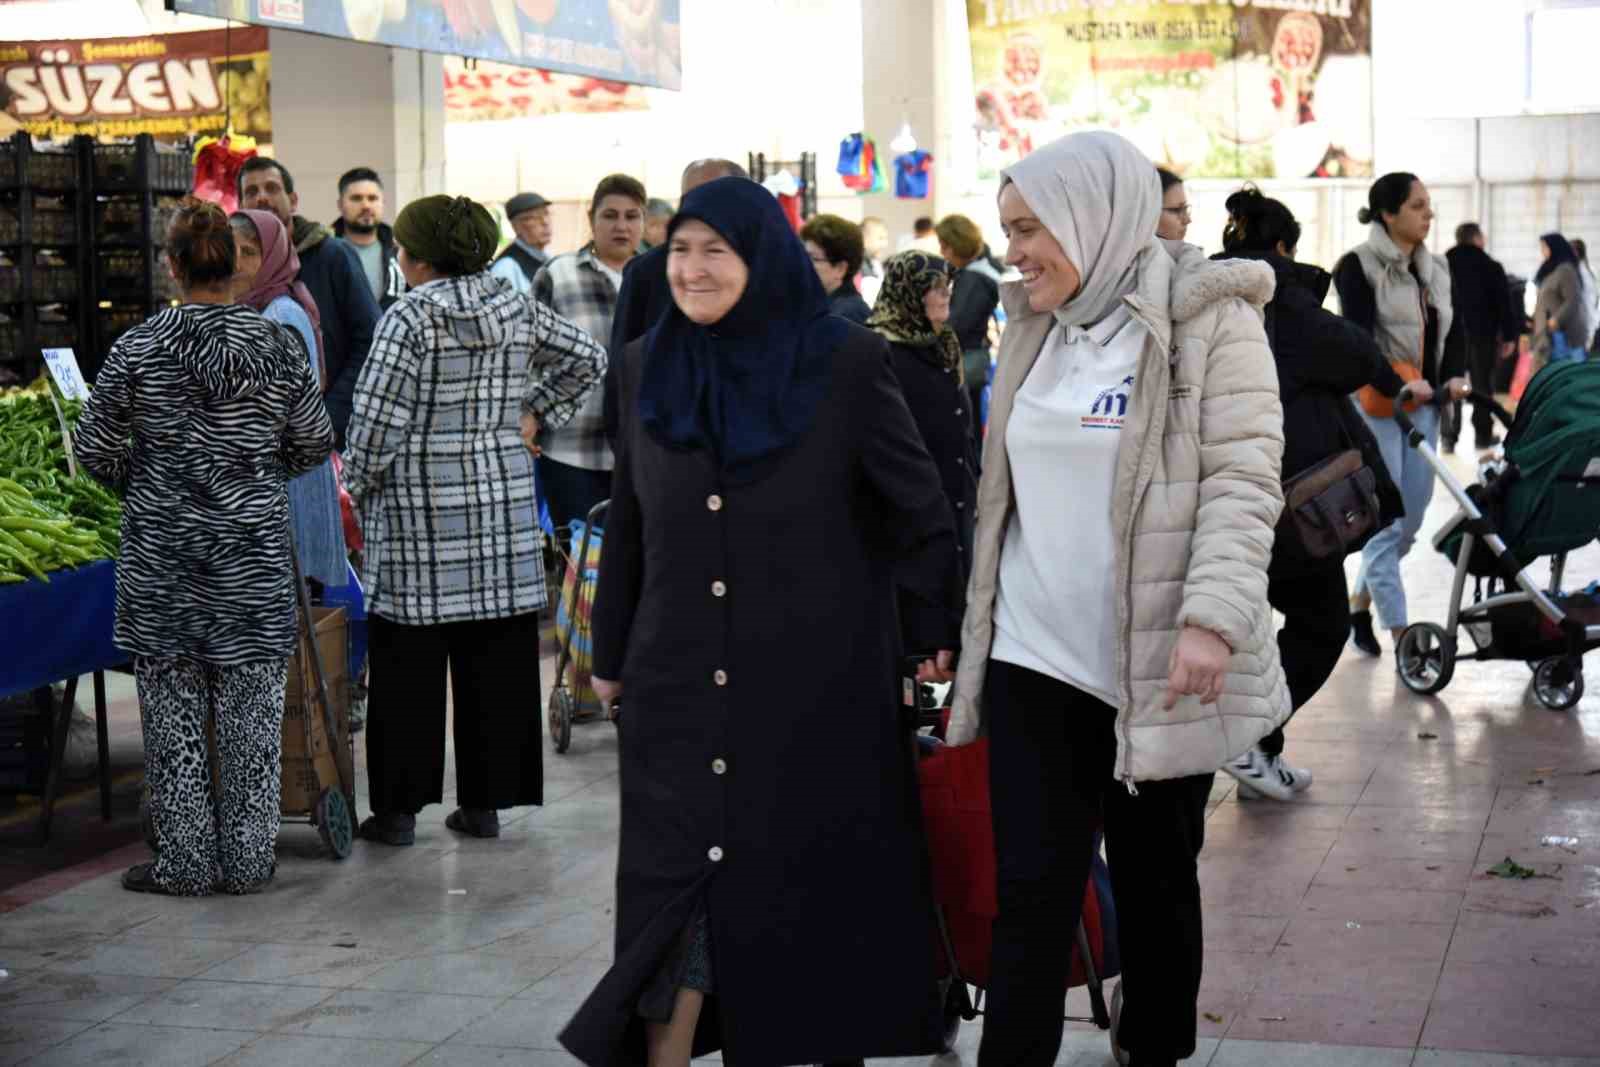 Mustafakemalpaşa Belediyesi sayesinde pazar alışverişleri keyfe dönüşüyor